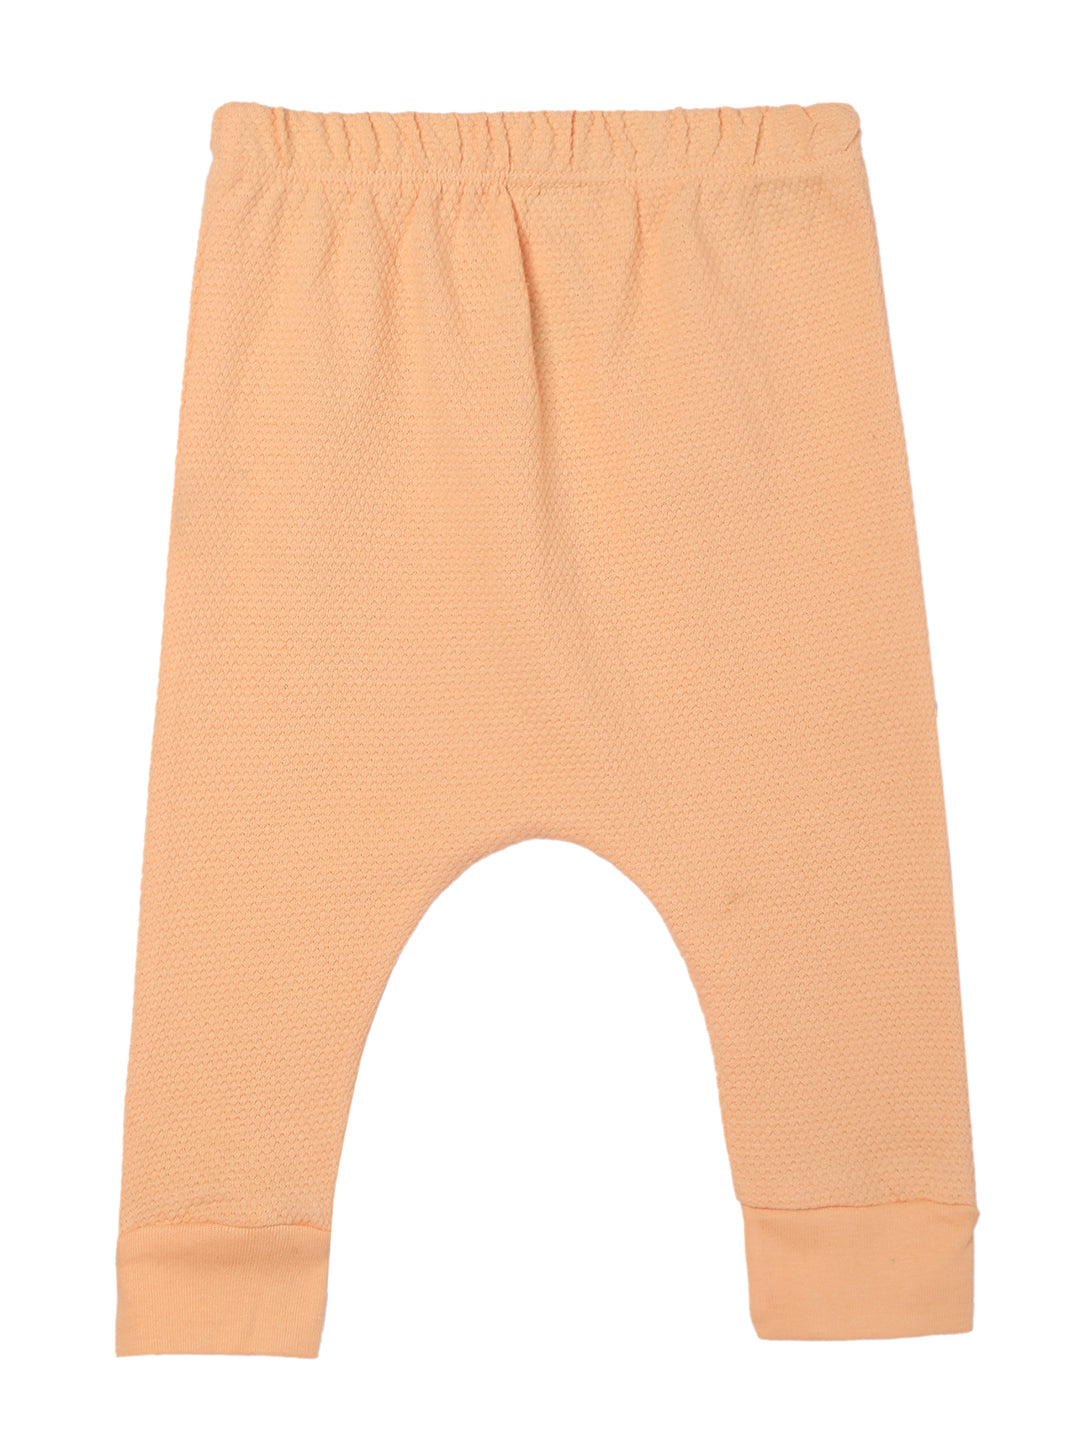 Combo of 2 Infant Sets: Pastel Orange & Lavender Infant Set